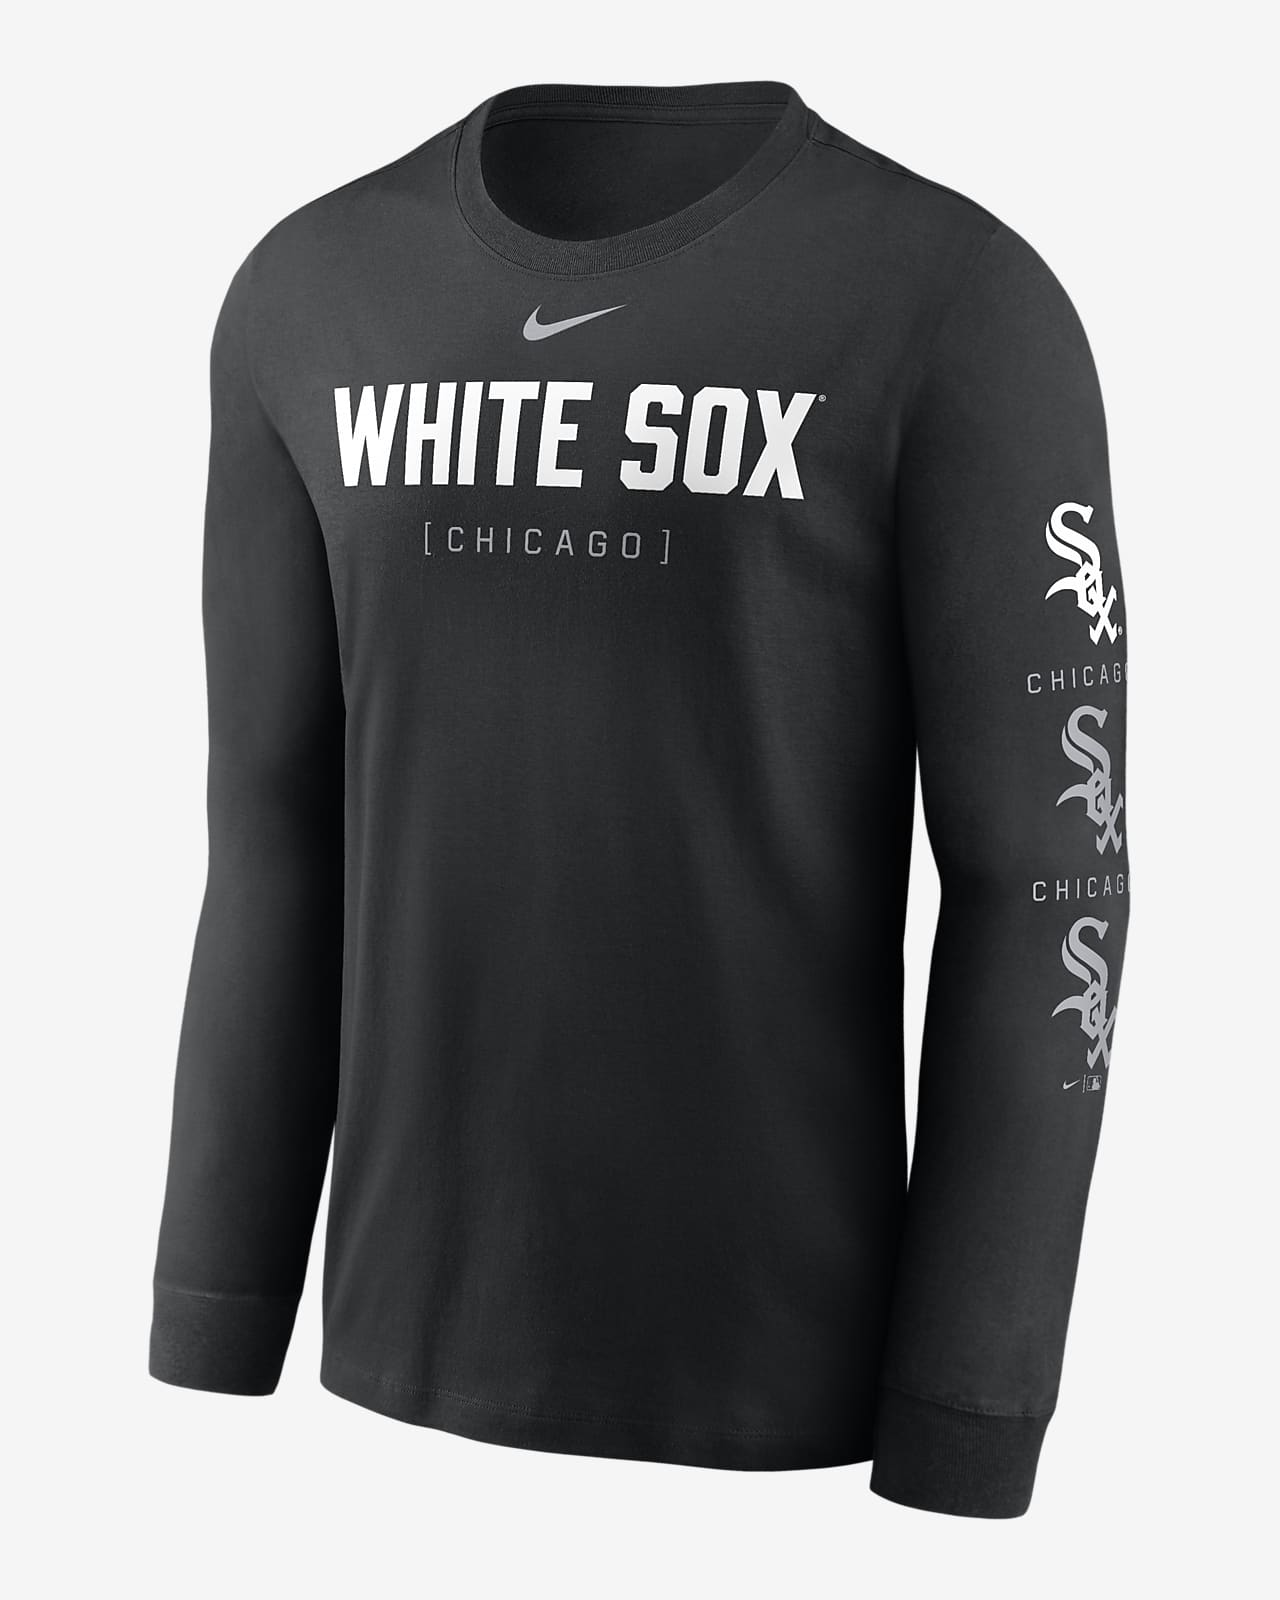 Chicago White Sox Repeater Men's Nike MLB Long-Sleeve T-Shirt